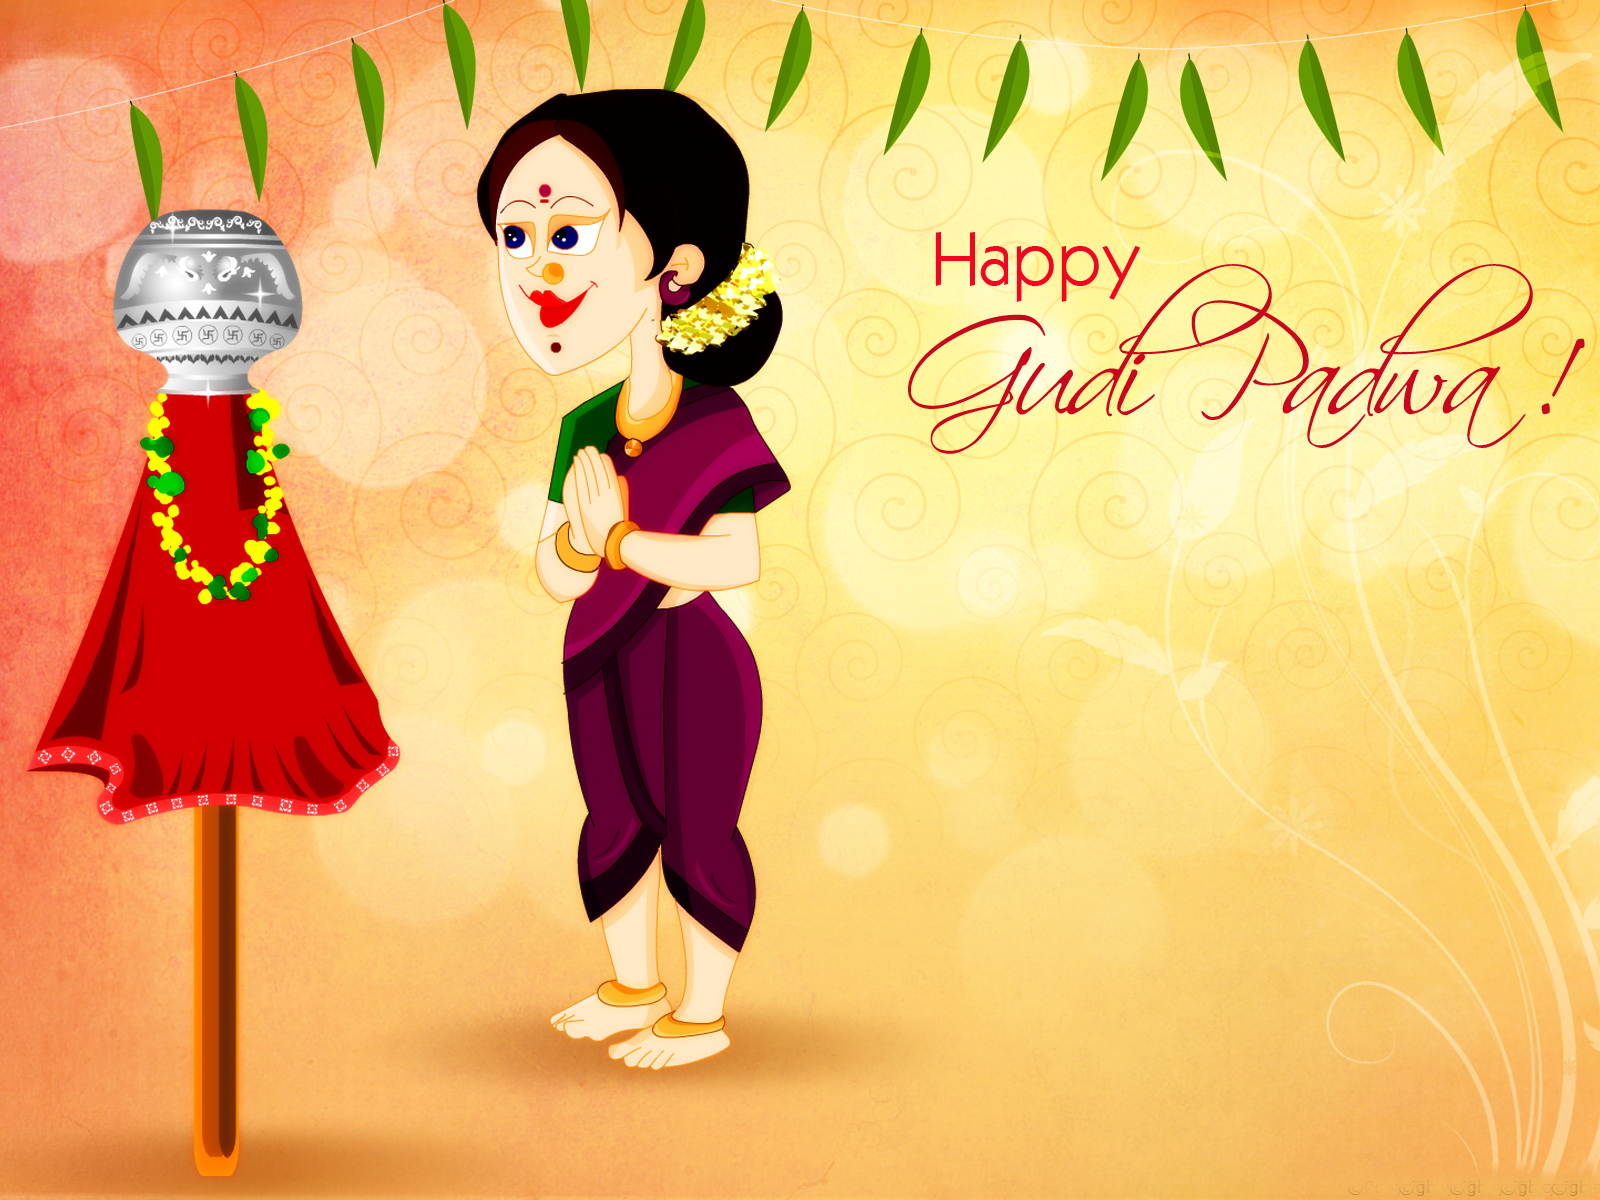 Happy Gudi Padwa Images